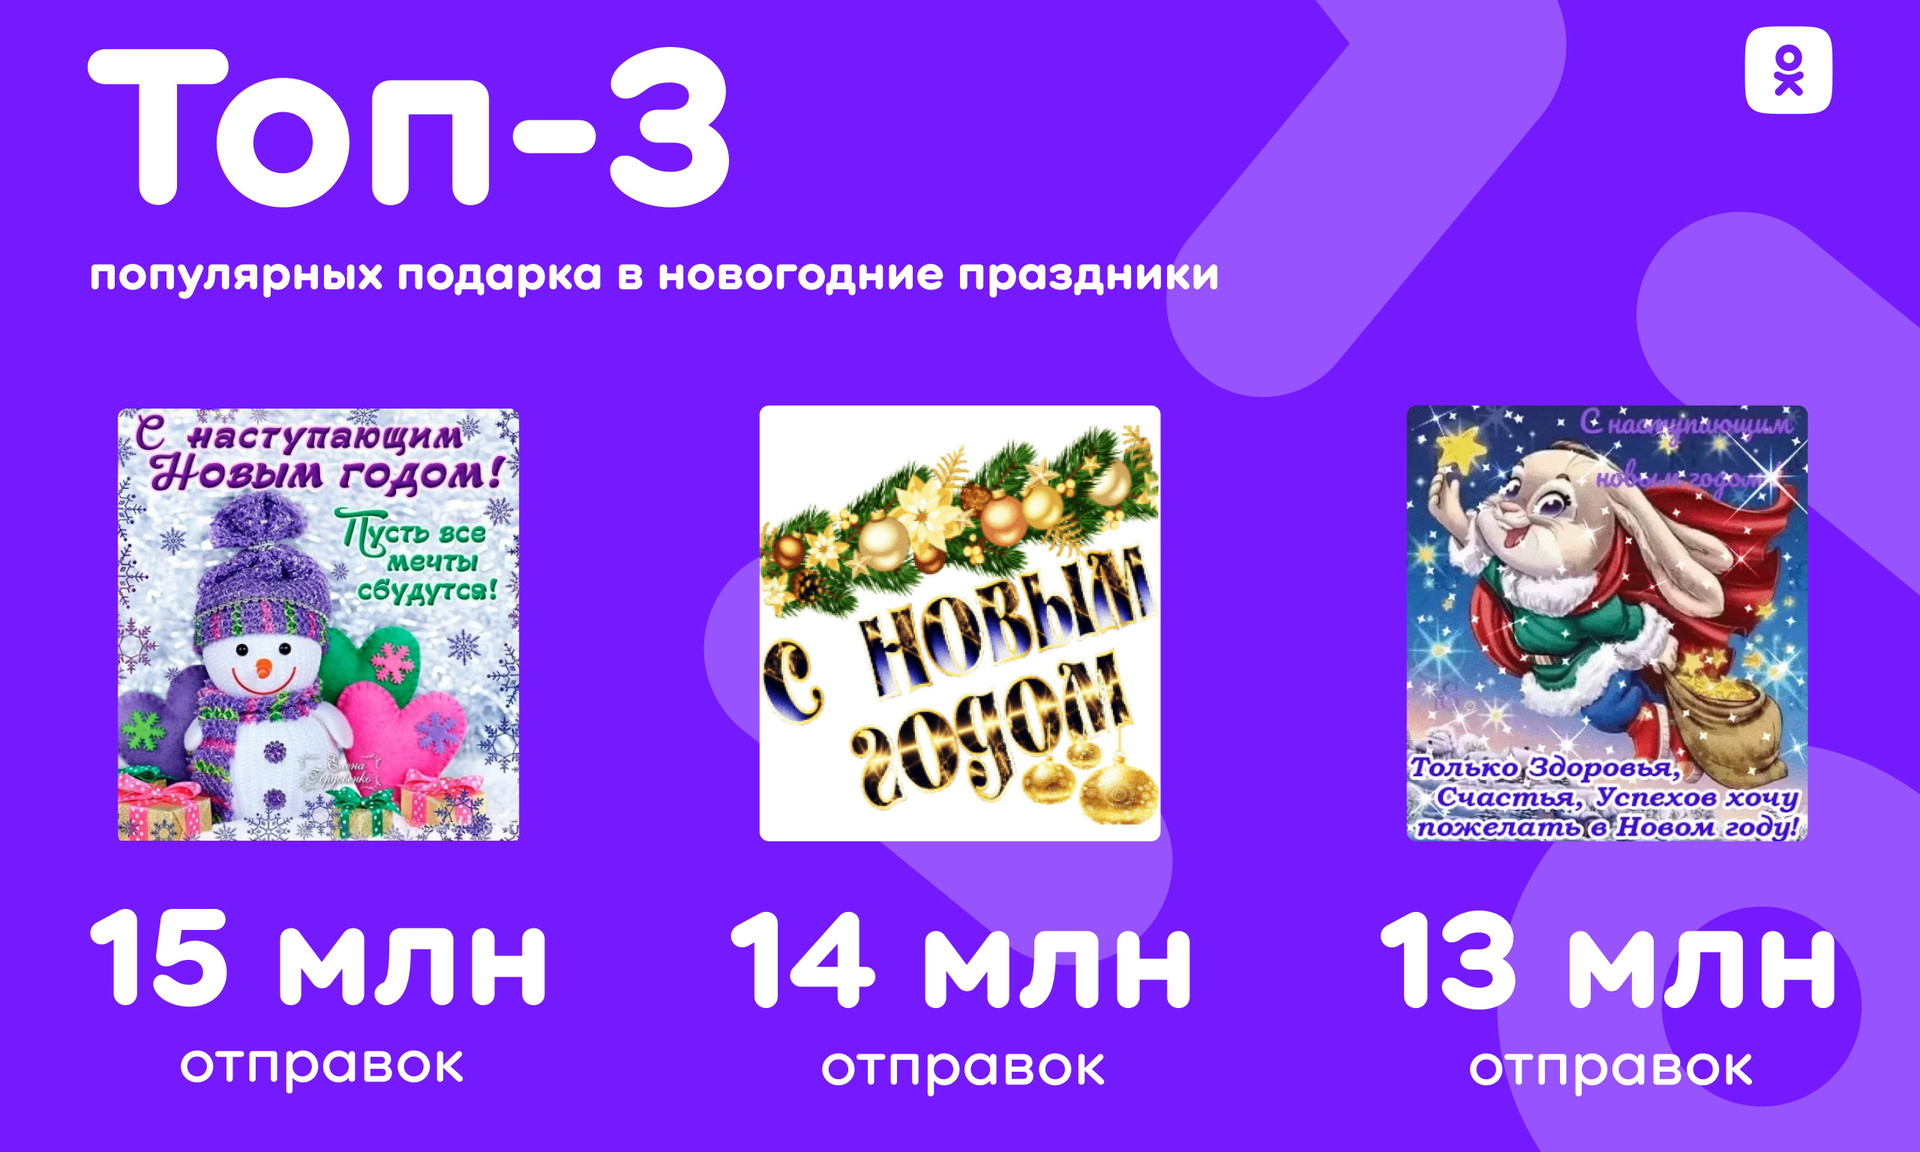 Подарки, стикеры, открытки: как пользователи встретили Новый год в «Одноклассниках»